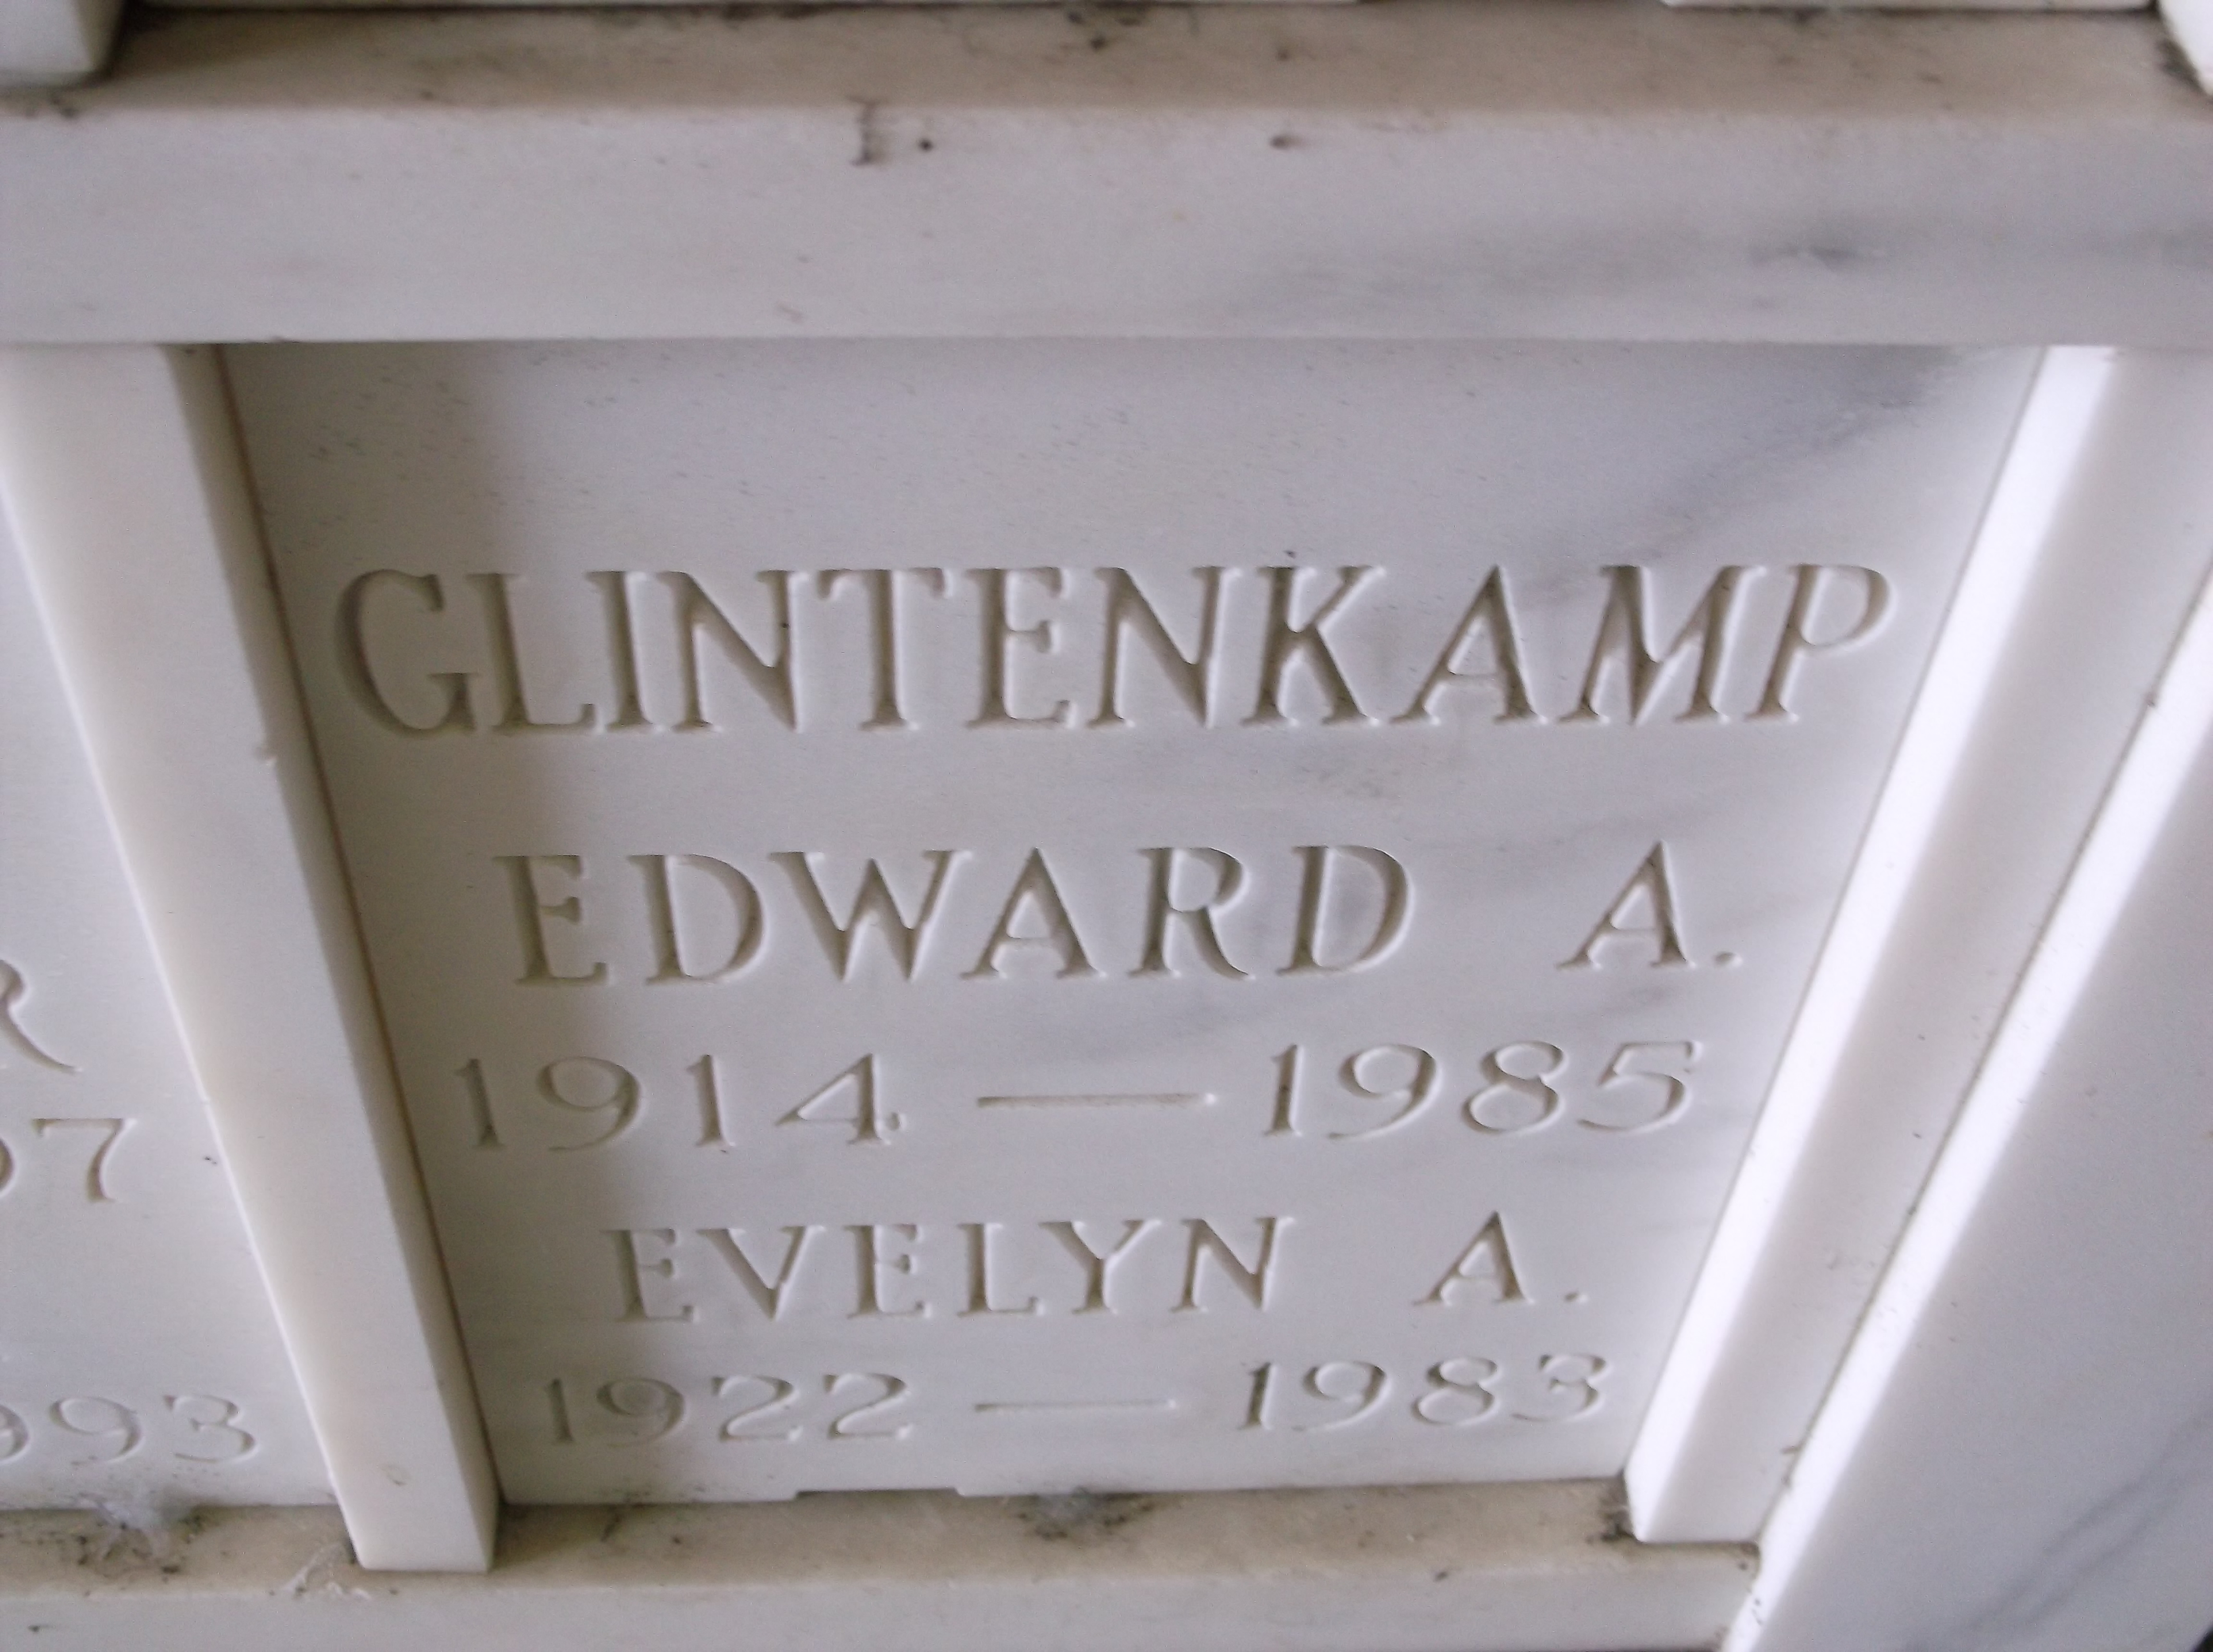 Edward A Glintenkamp